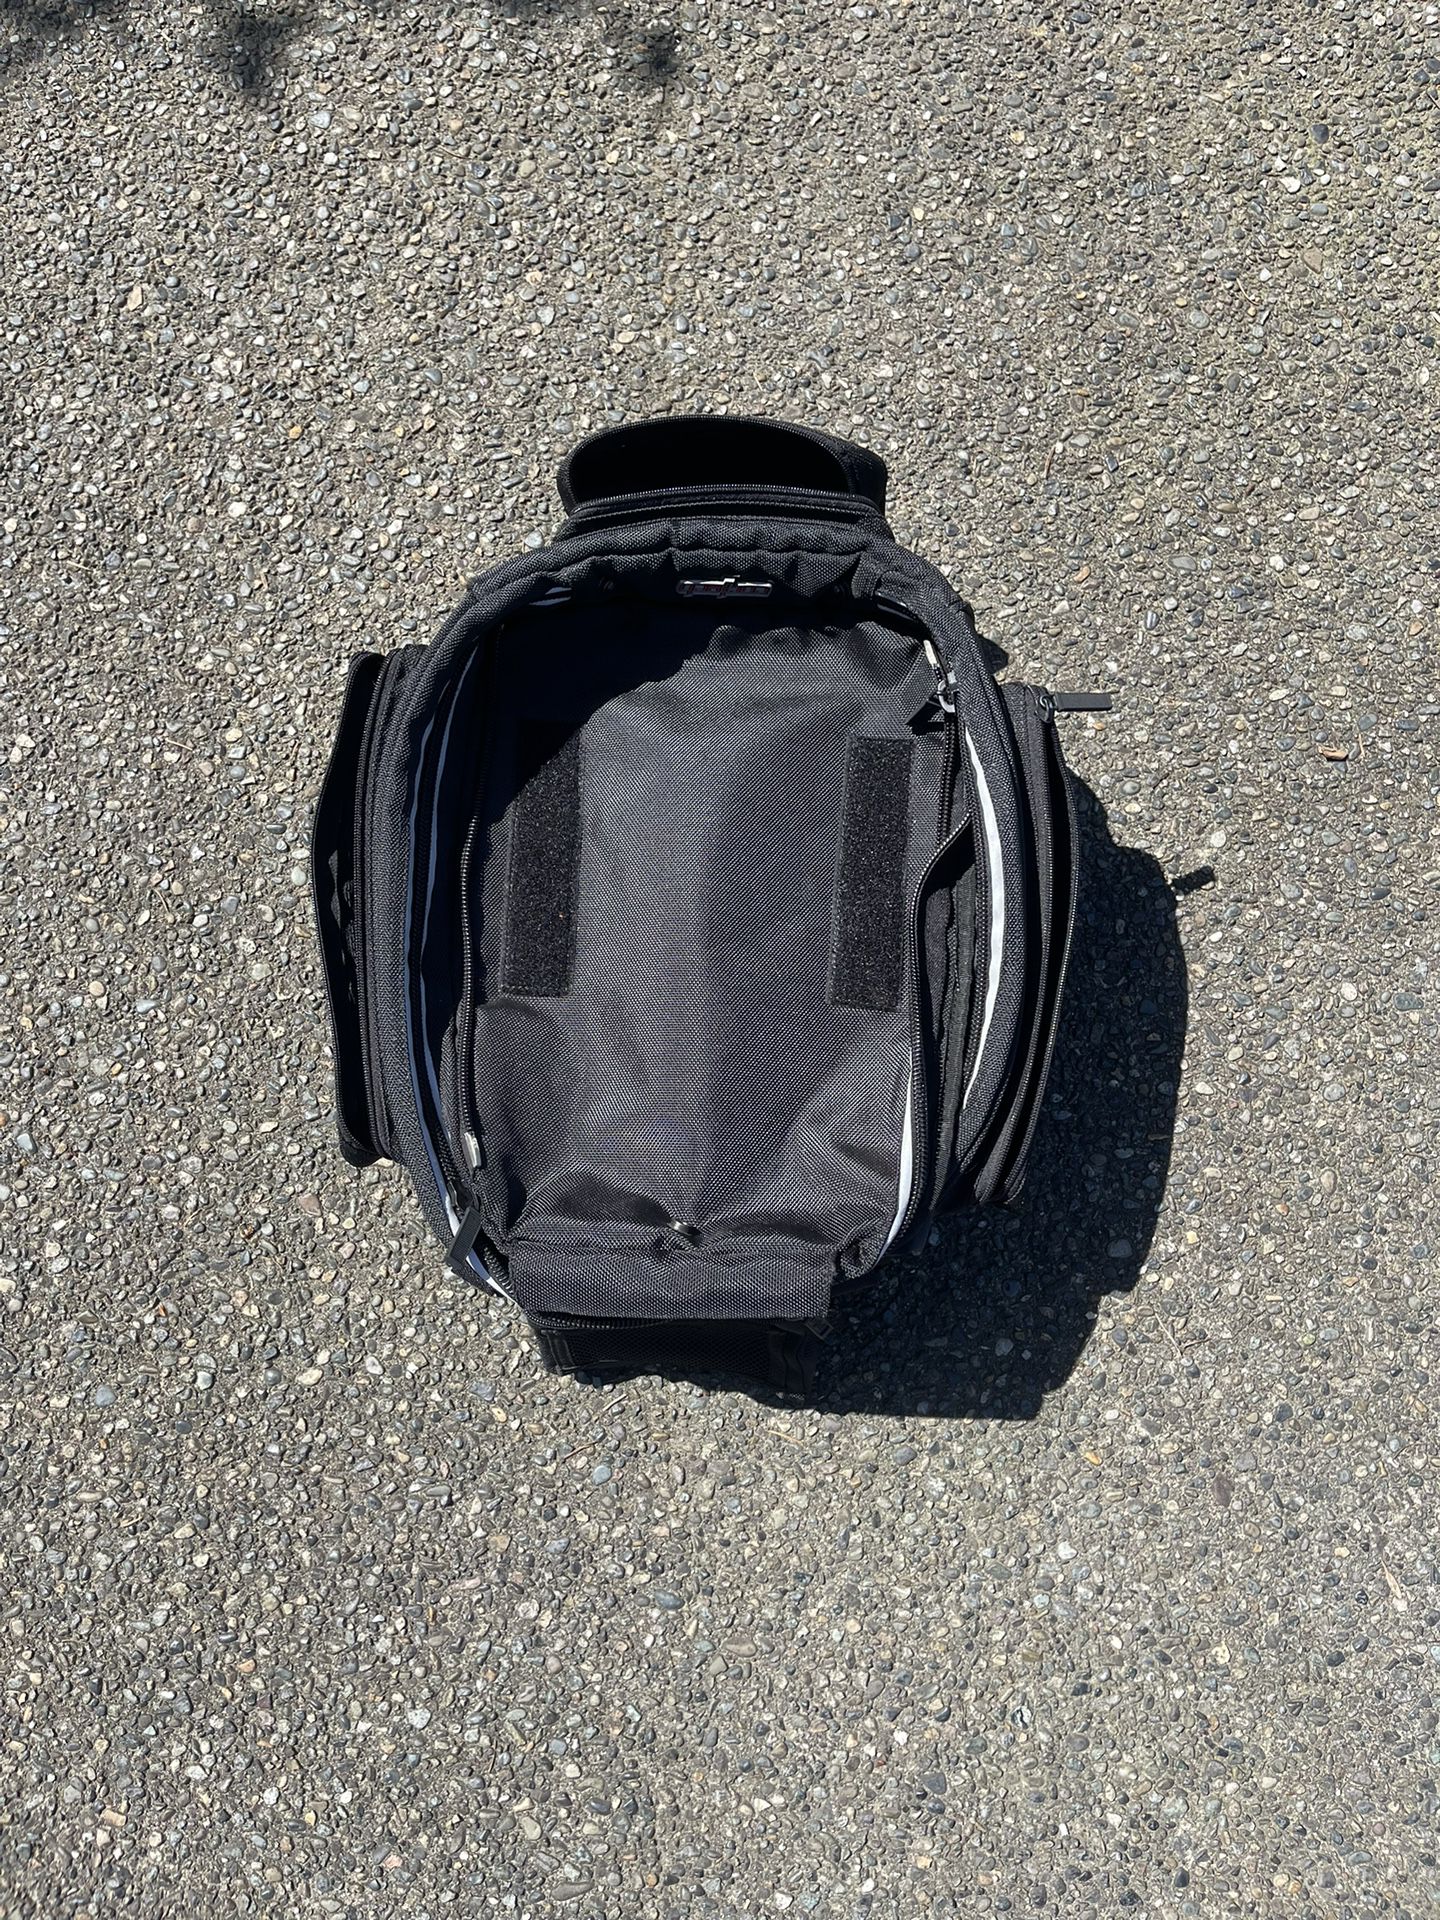 Motorcycle Tank Bag